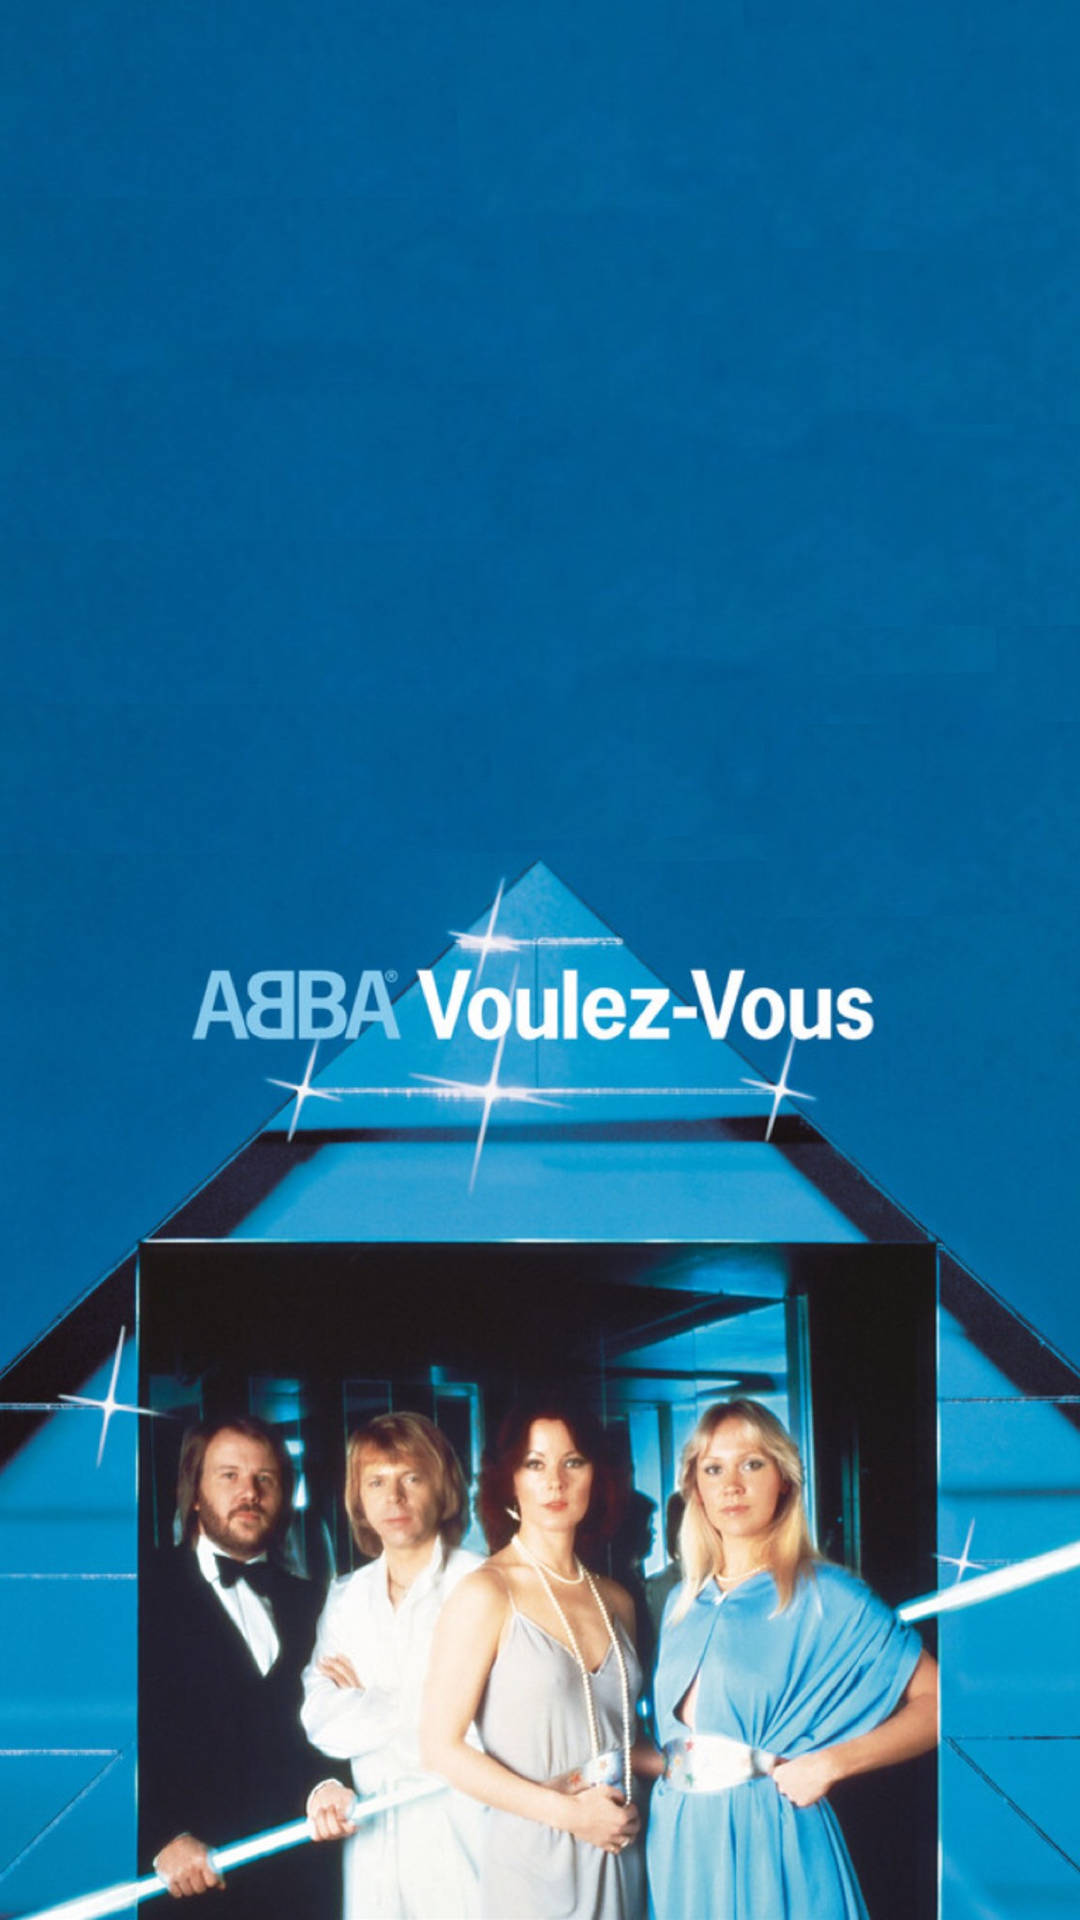 ABBA Voulez-Vous Album Wallpaper